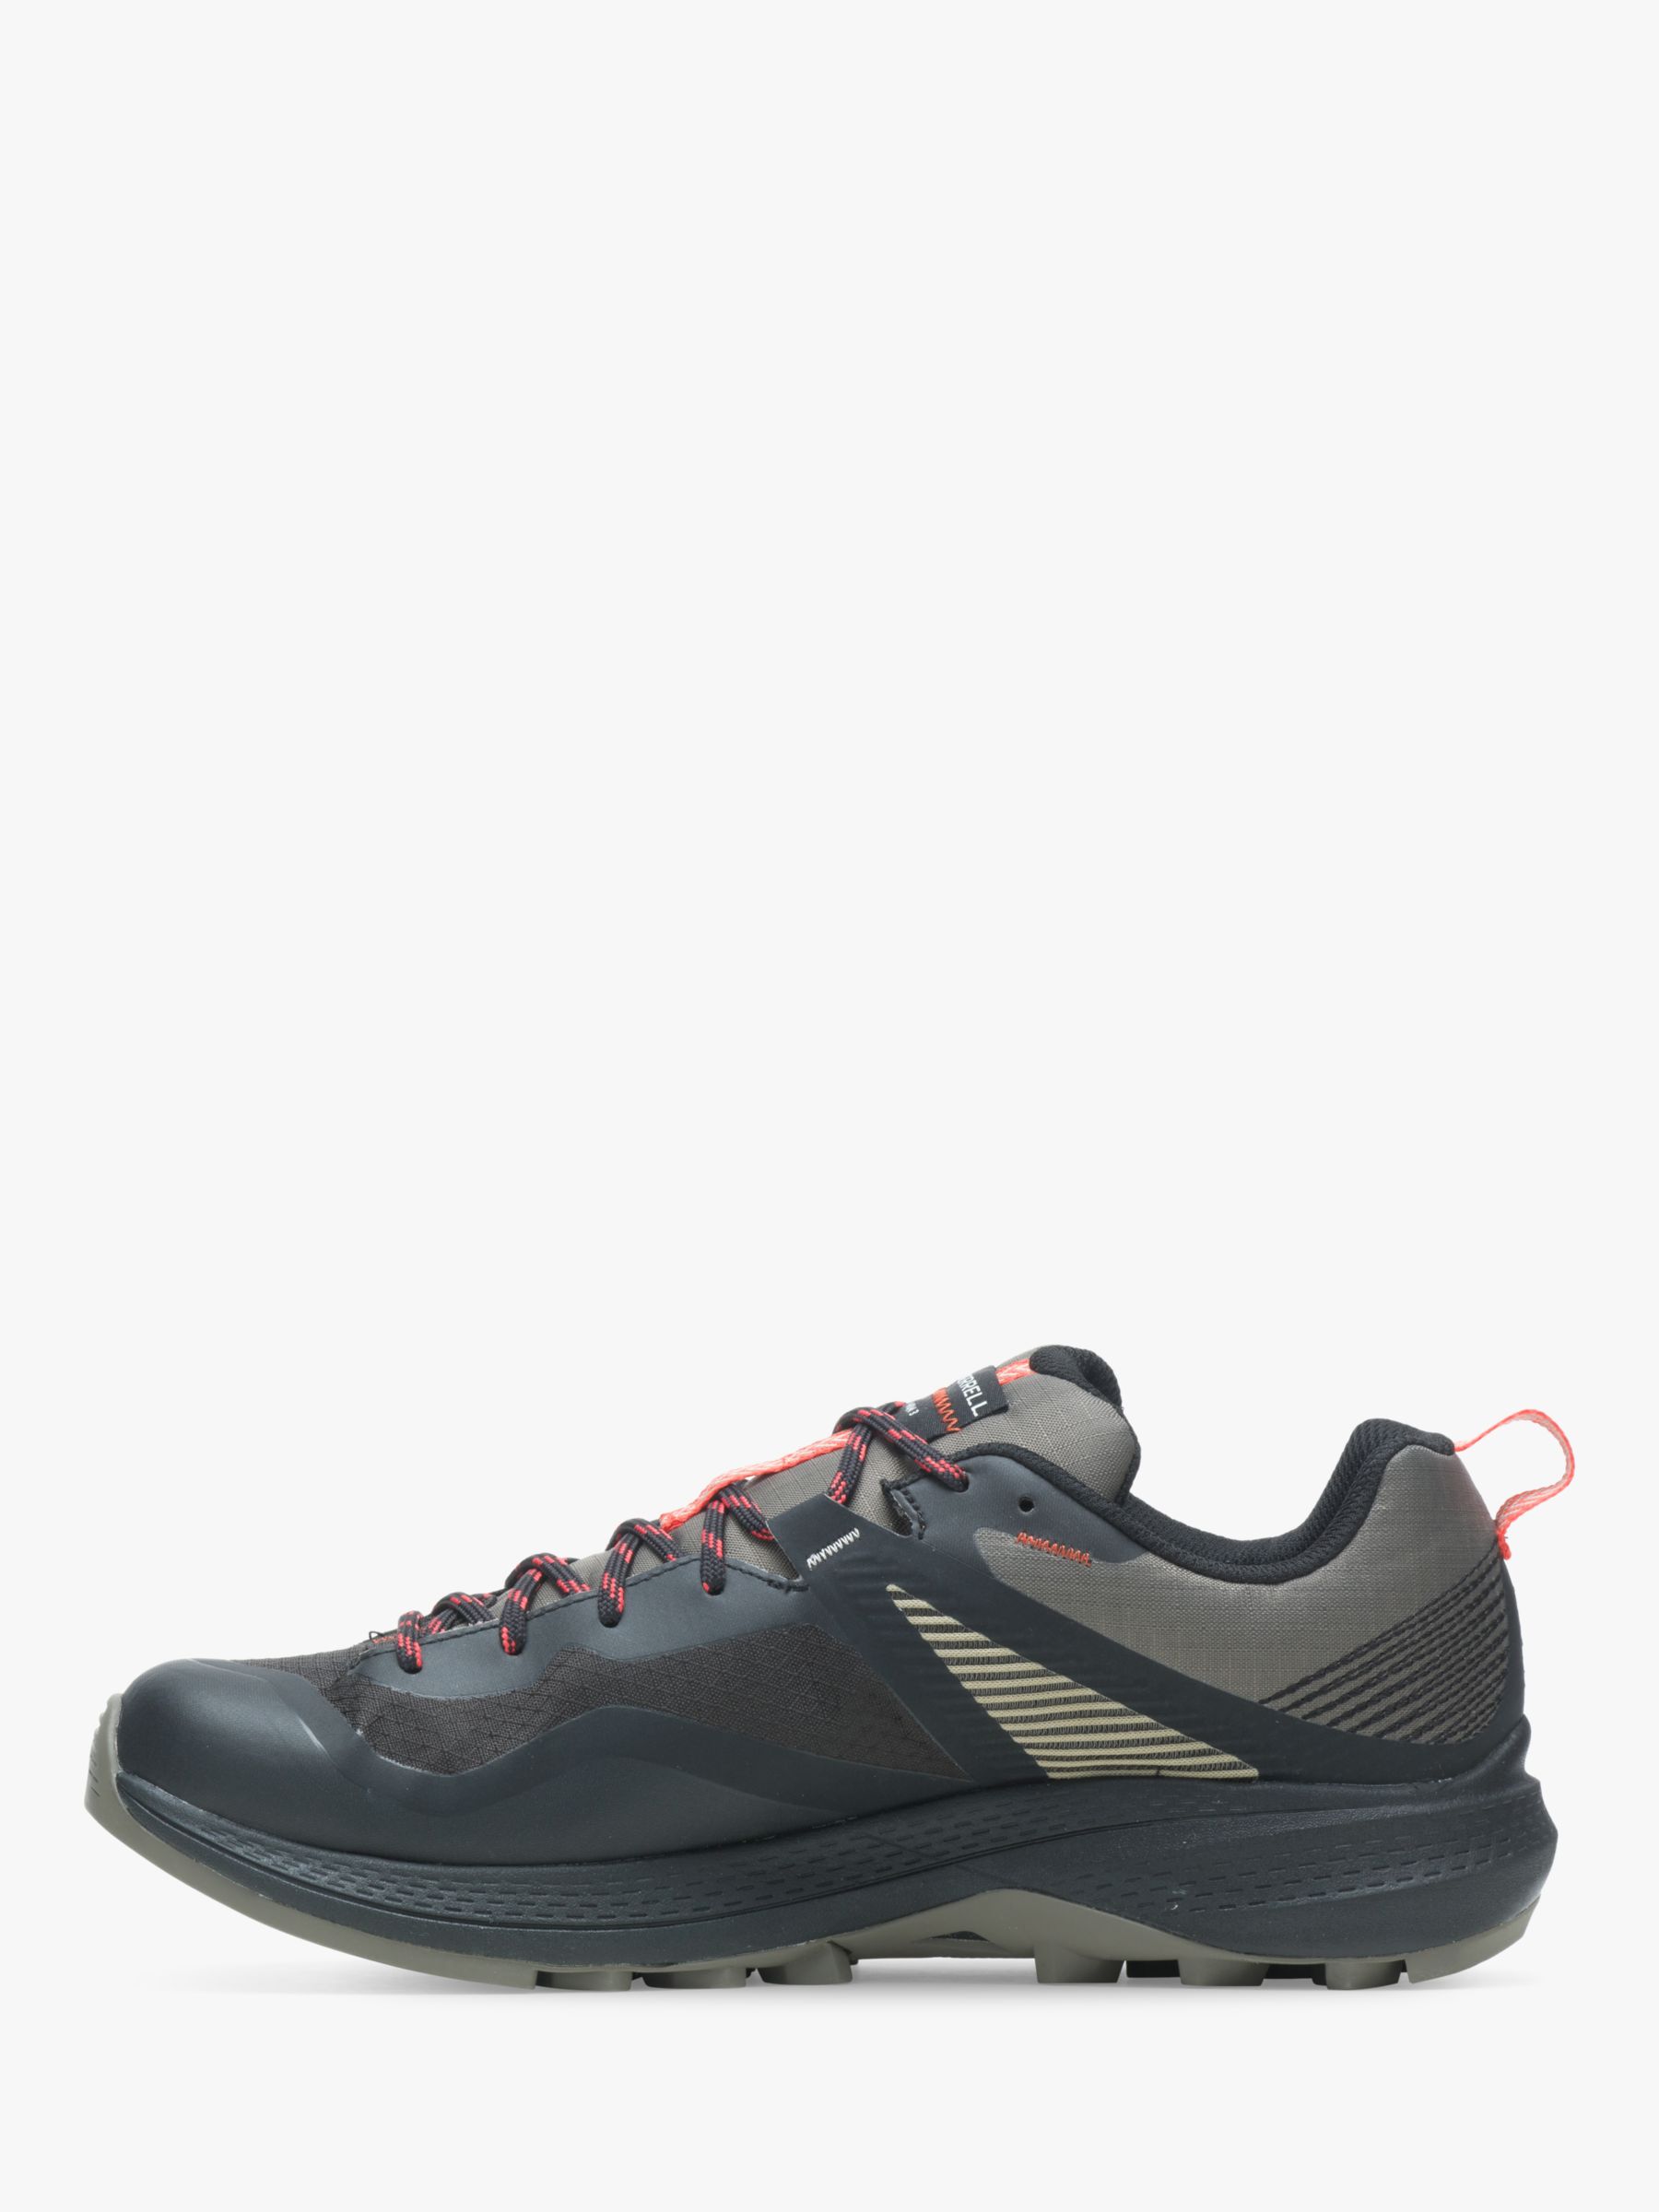 Buy Merrell MQM 3 Men's Waterproof Gore-Tex Walking Shoes Online at johnlewis.com